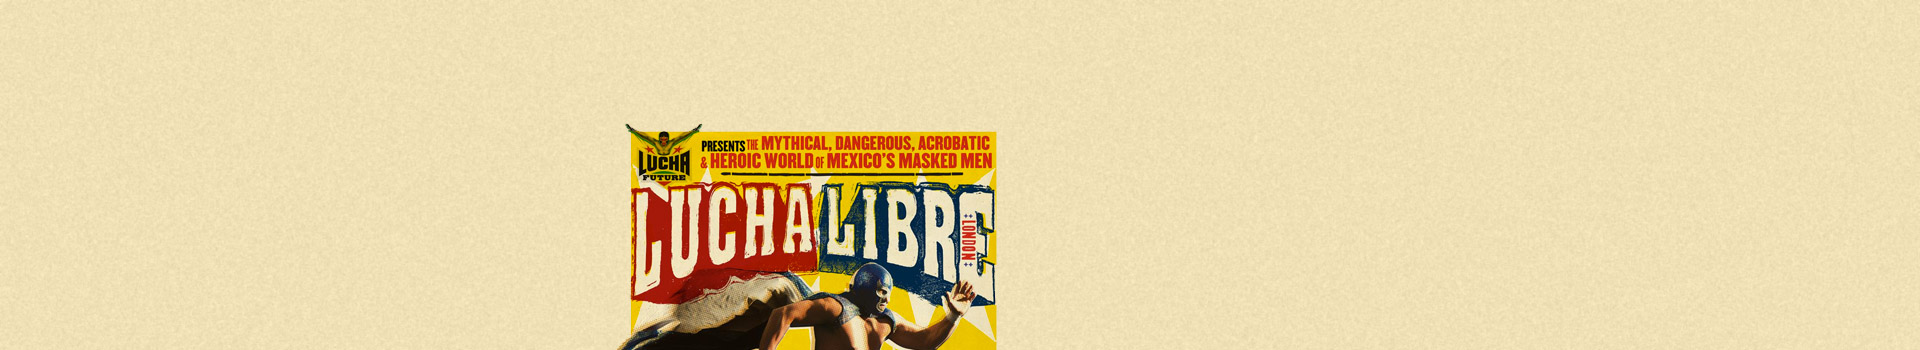 Lucha Libre tickets at the Royal Albert Hall